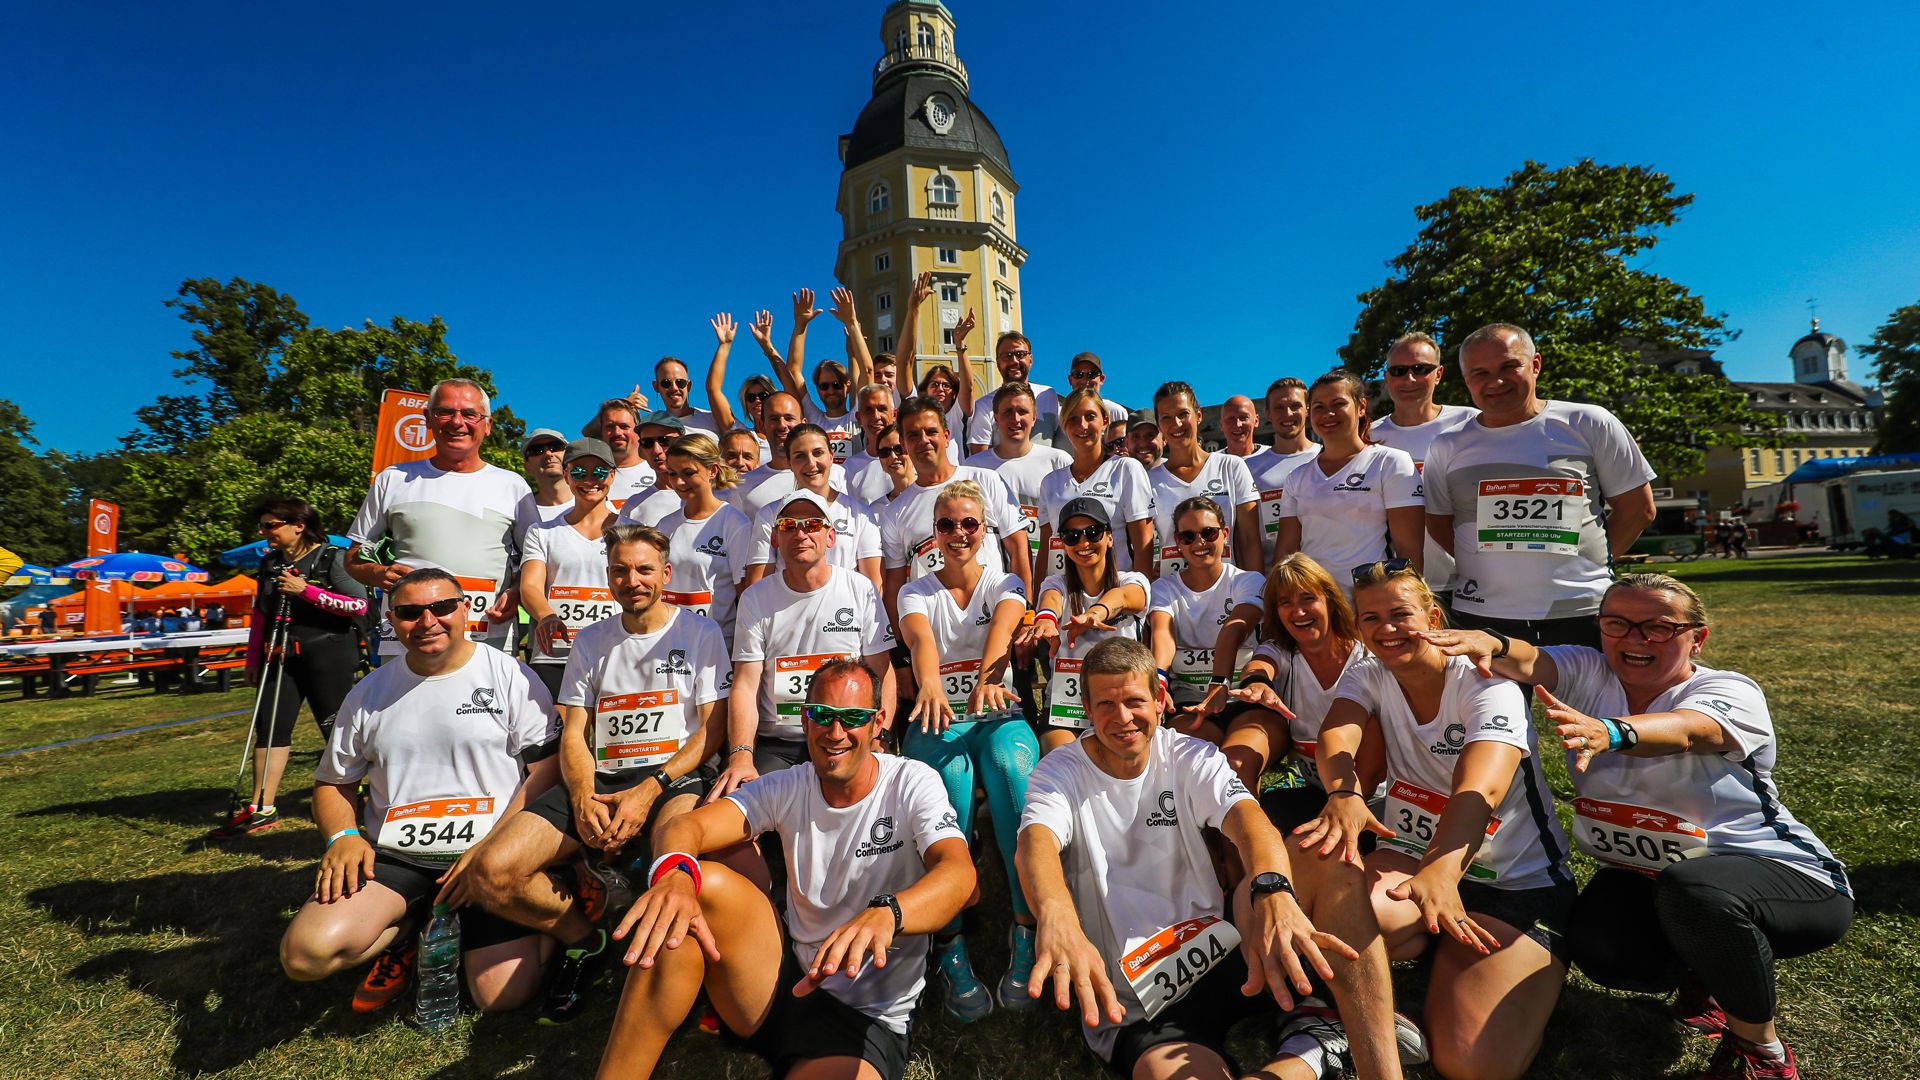 Bei dem rund 5,5 Kilometer langen Lauf geht es als Team gemeinsam an den Start. Anschließend wartet die After-Run-Party im Schlossgarten.